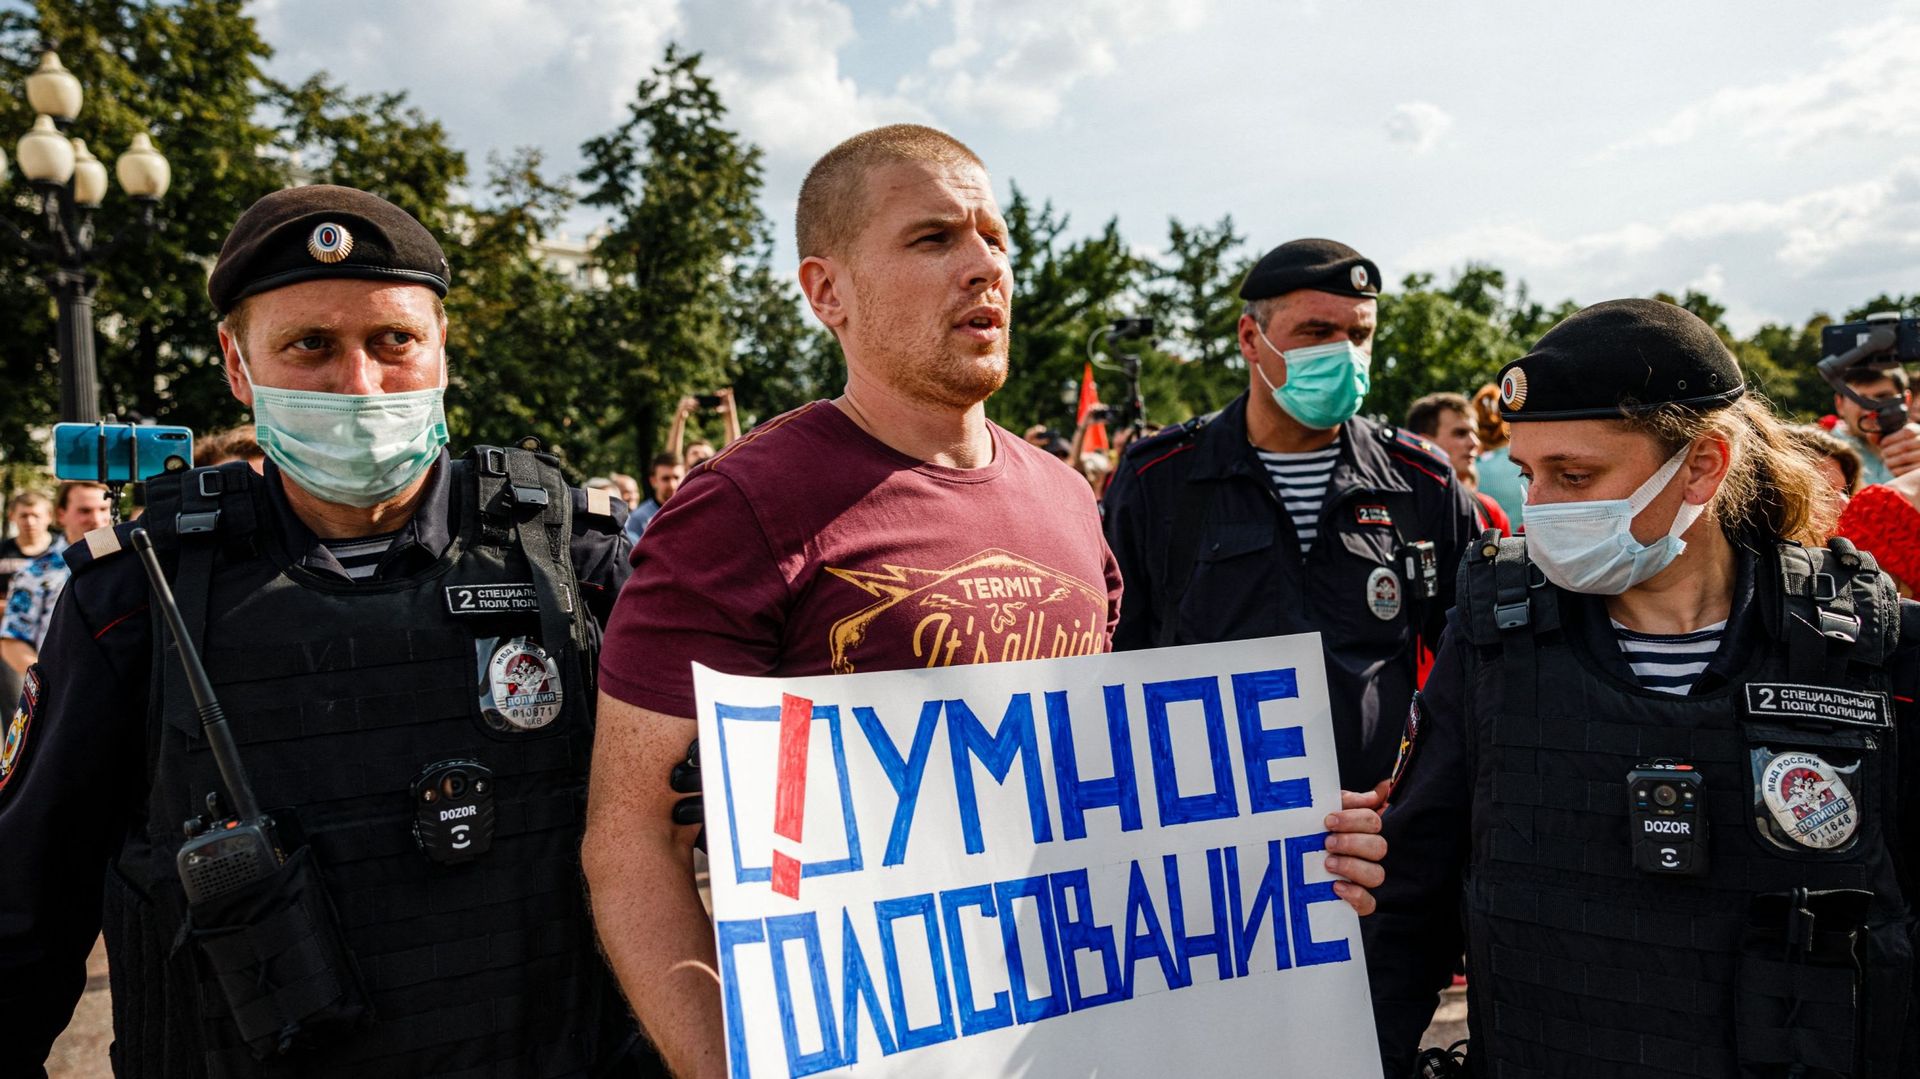 Des policiers arrêtent un homme avec une affiche sur laquelle on peut lire "Votez intelligemment" lors d’une manifestation anti-vaccination à Moscou, le 14 août 2021.